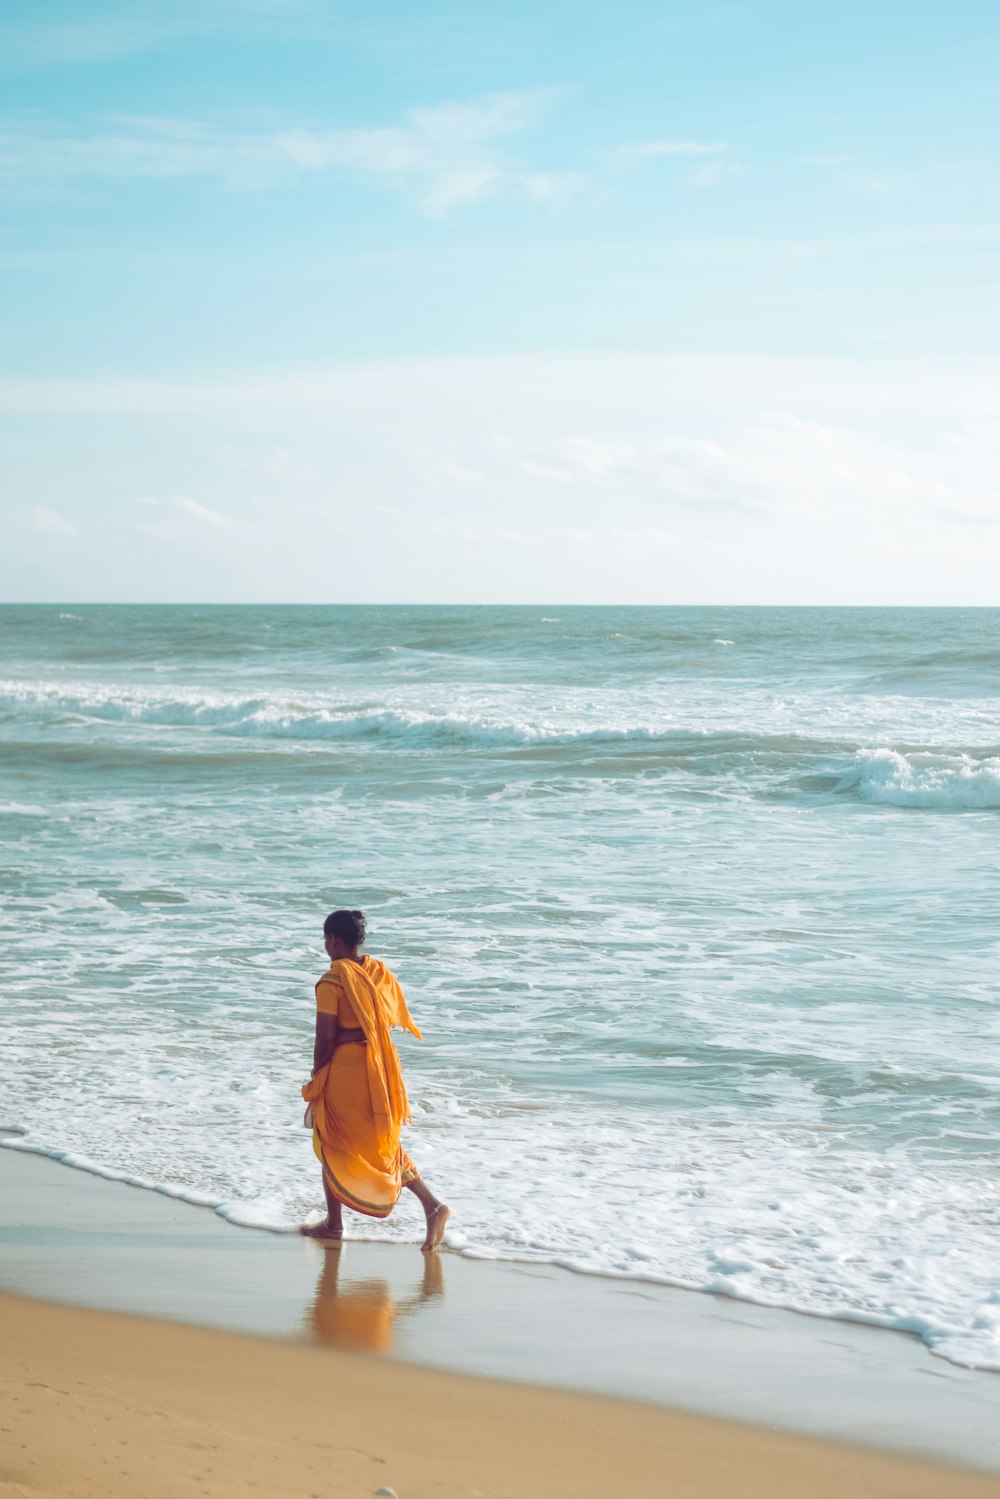 a person walking on the beach near the ocean